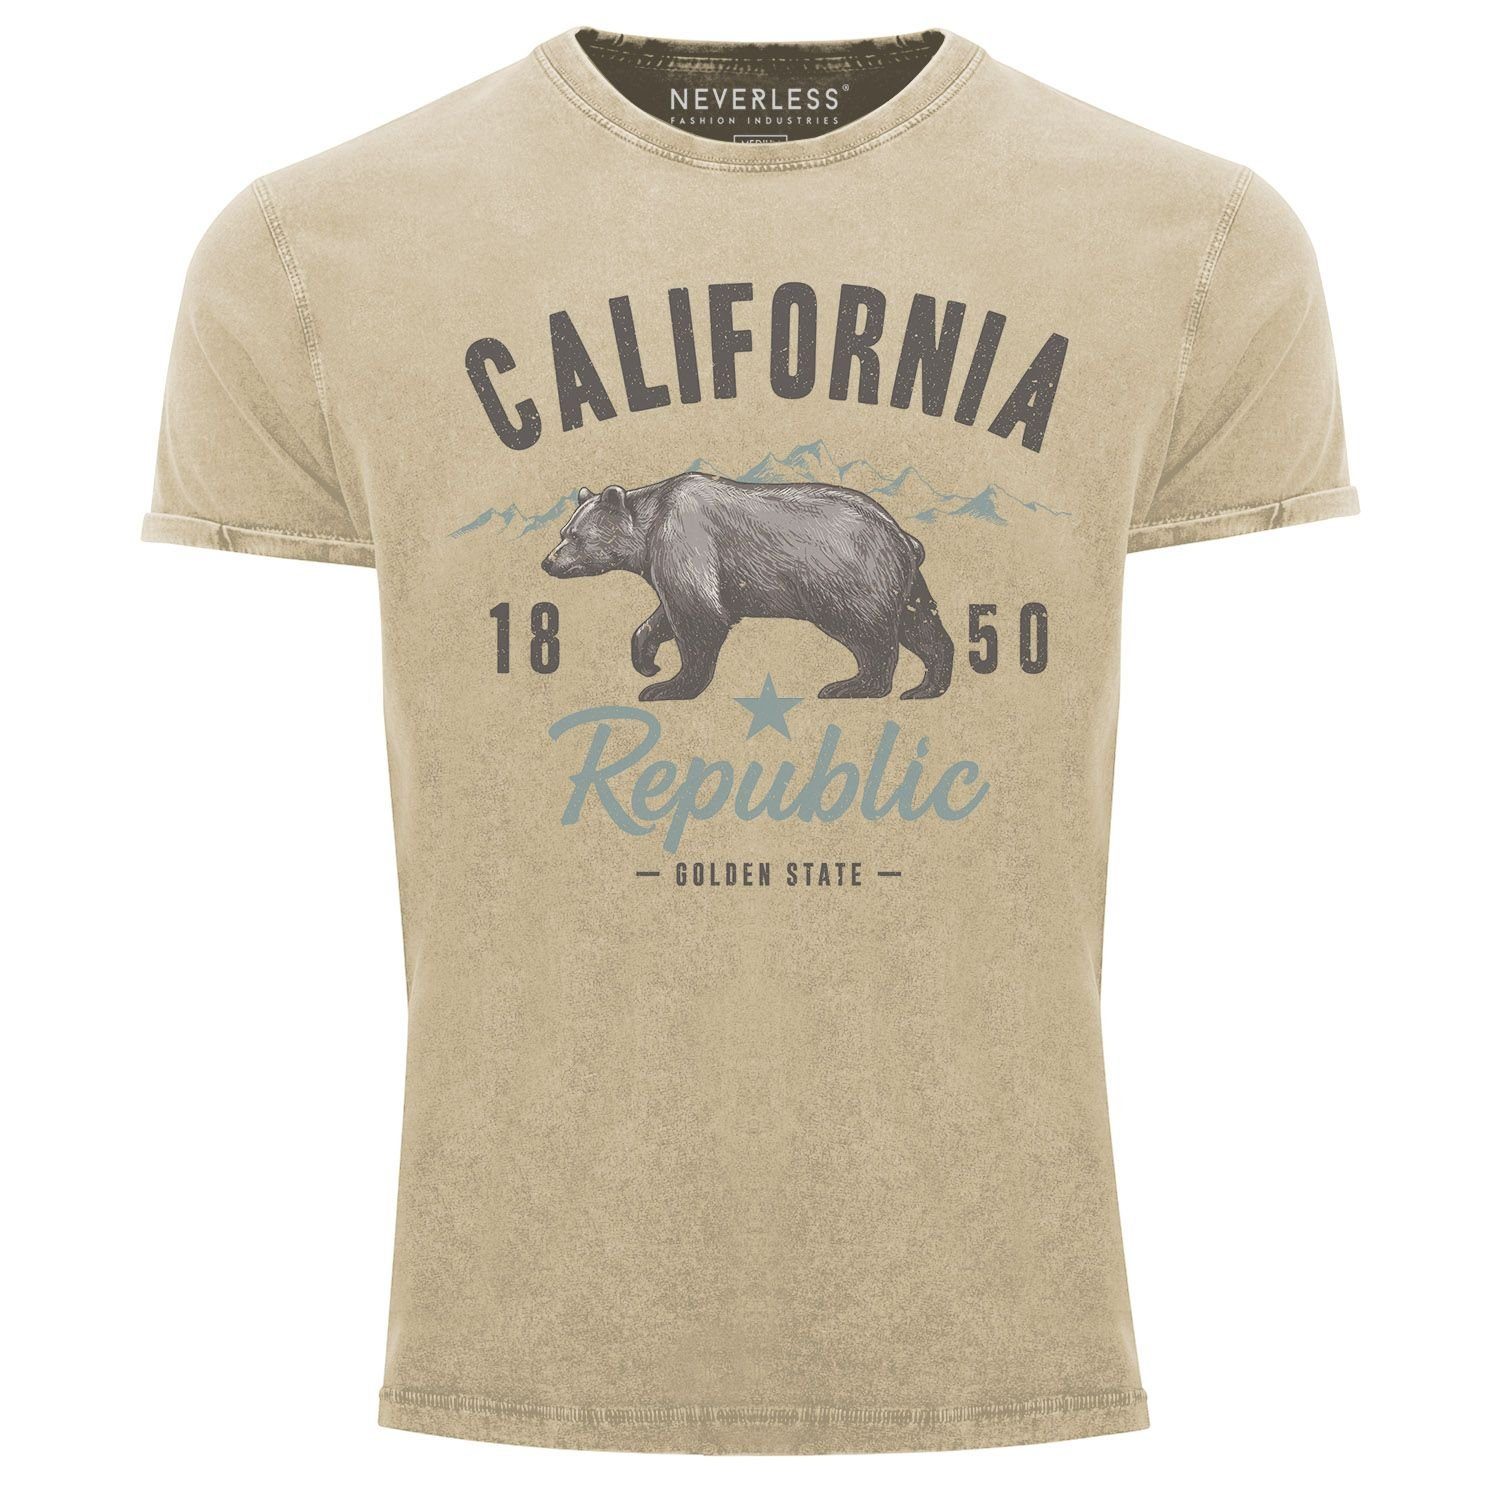 Neverless Print-Shirt Herren Vintage Shirt California Sommer Summer Golden State USA Bär Bear Printshirt T-Shirt Aufdruck Used Look Neverless® mit Print natur